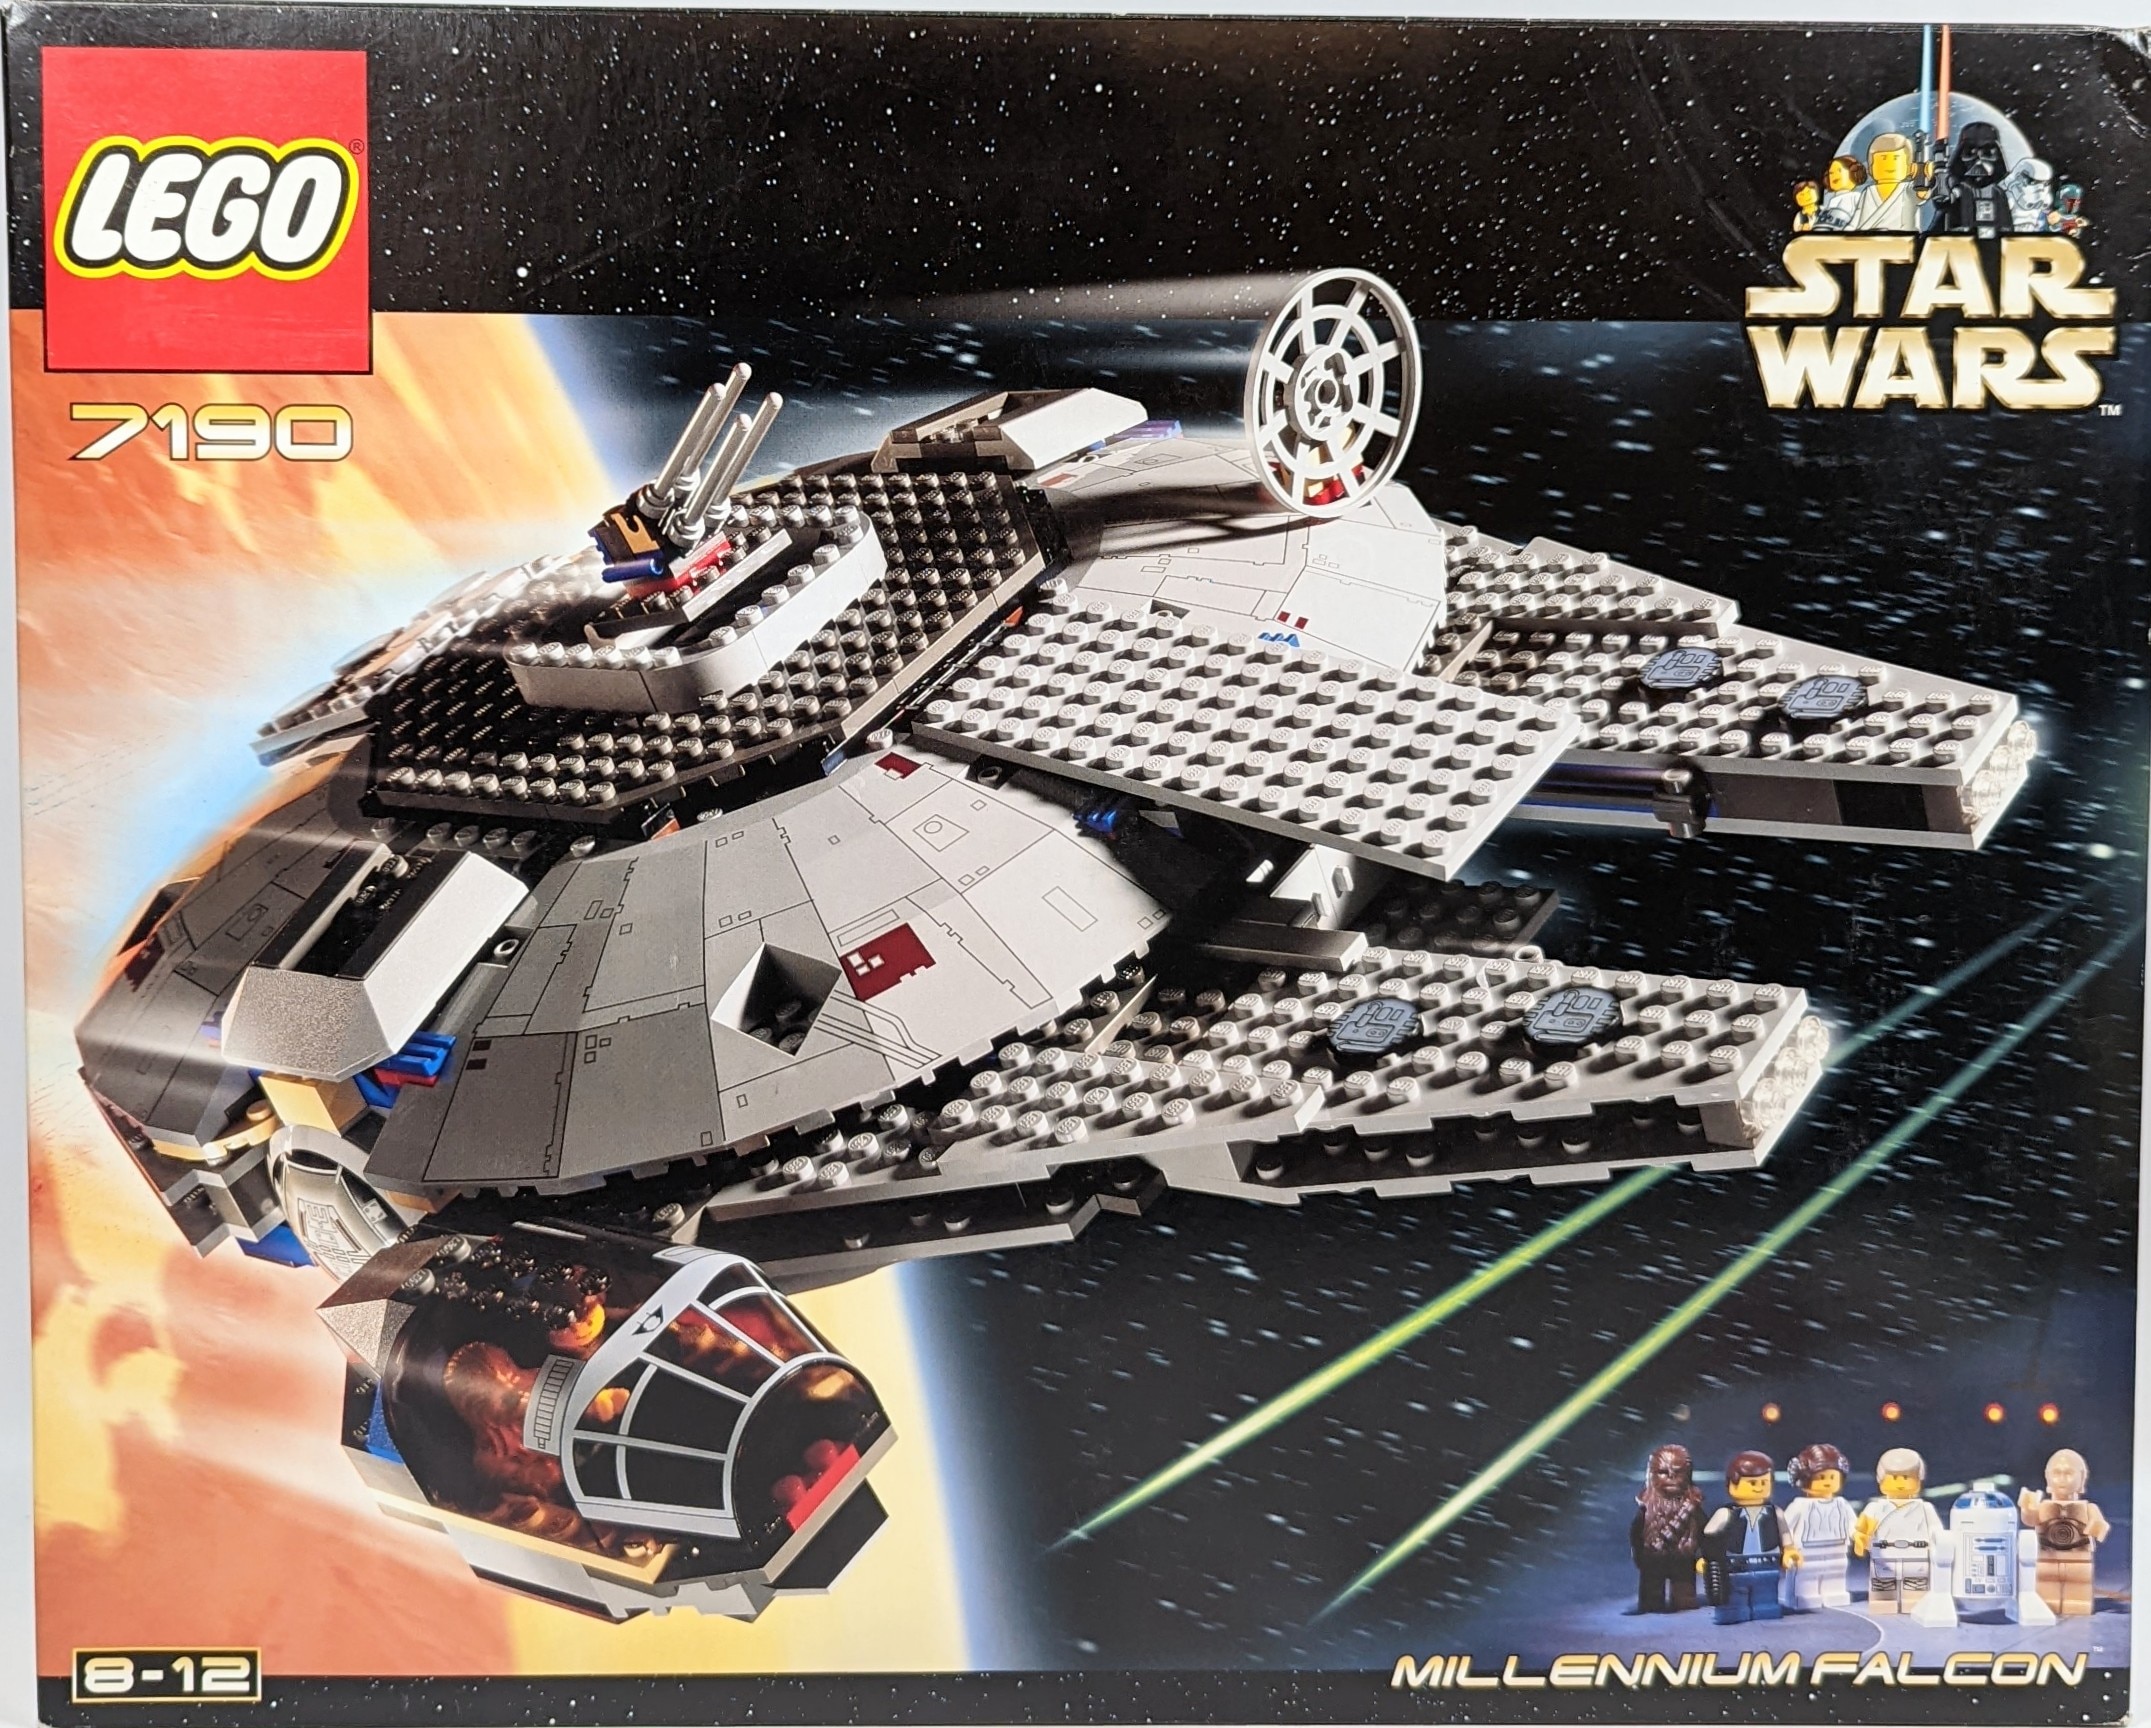 Millennium Falcon - LEGO Star Wars set 7190